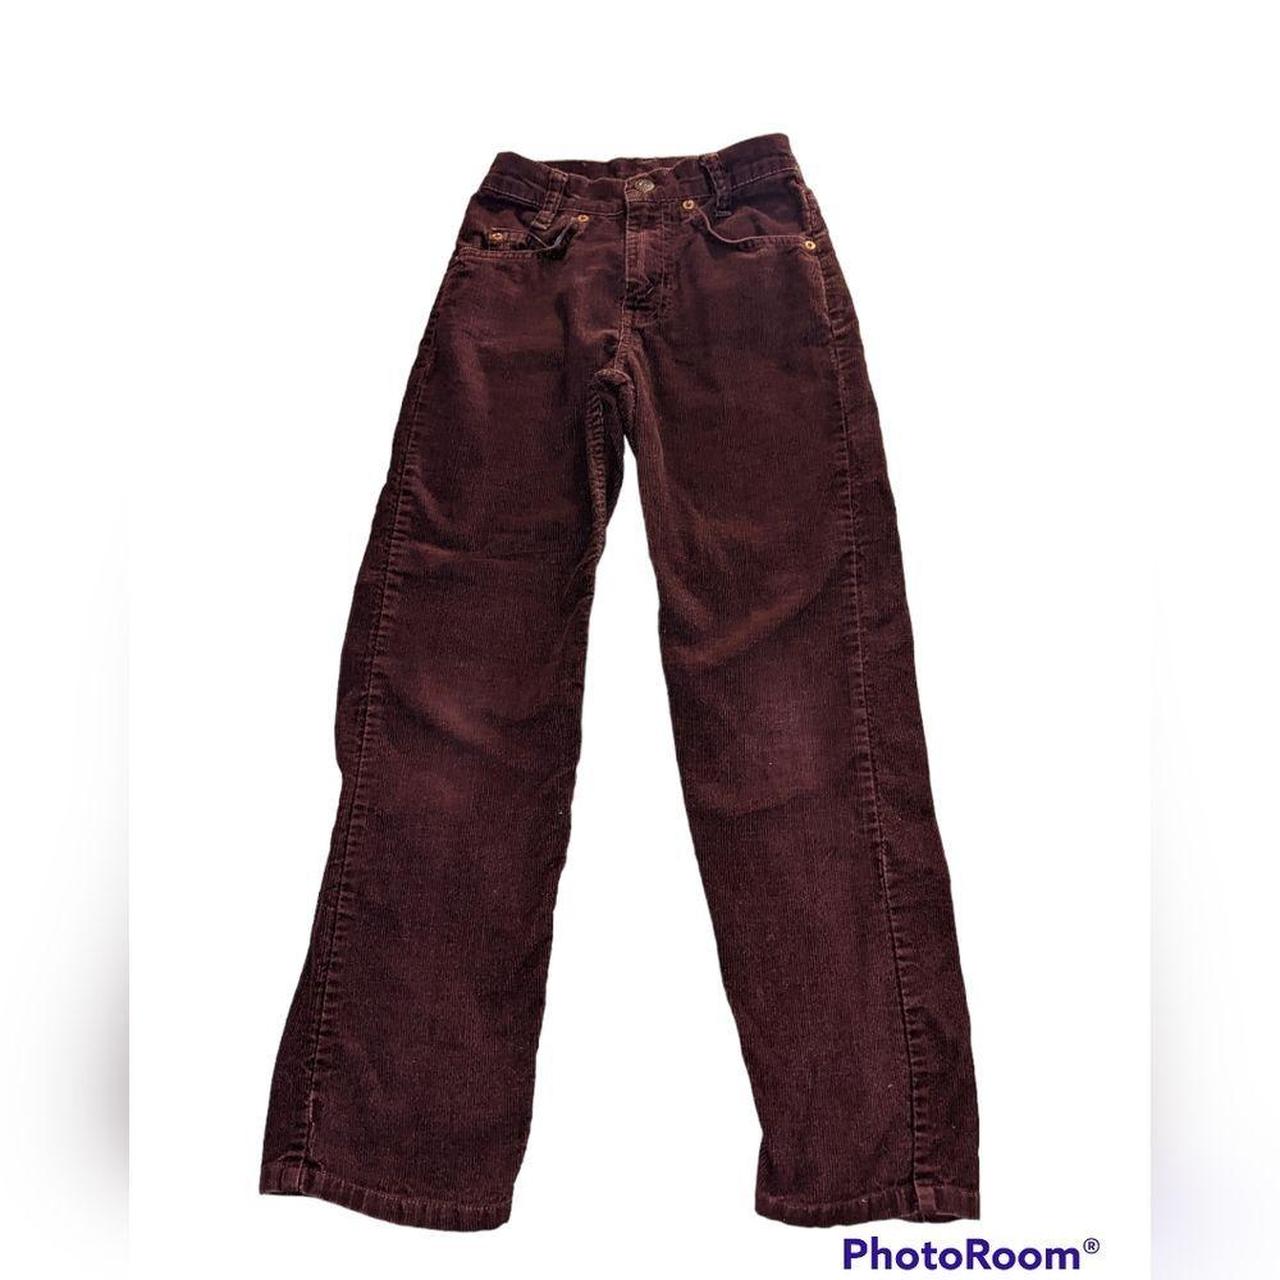 Levi's vintage brown corduroy pants student fit,... - Depop